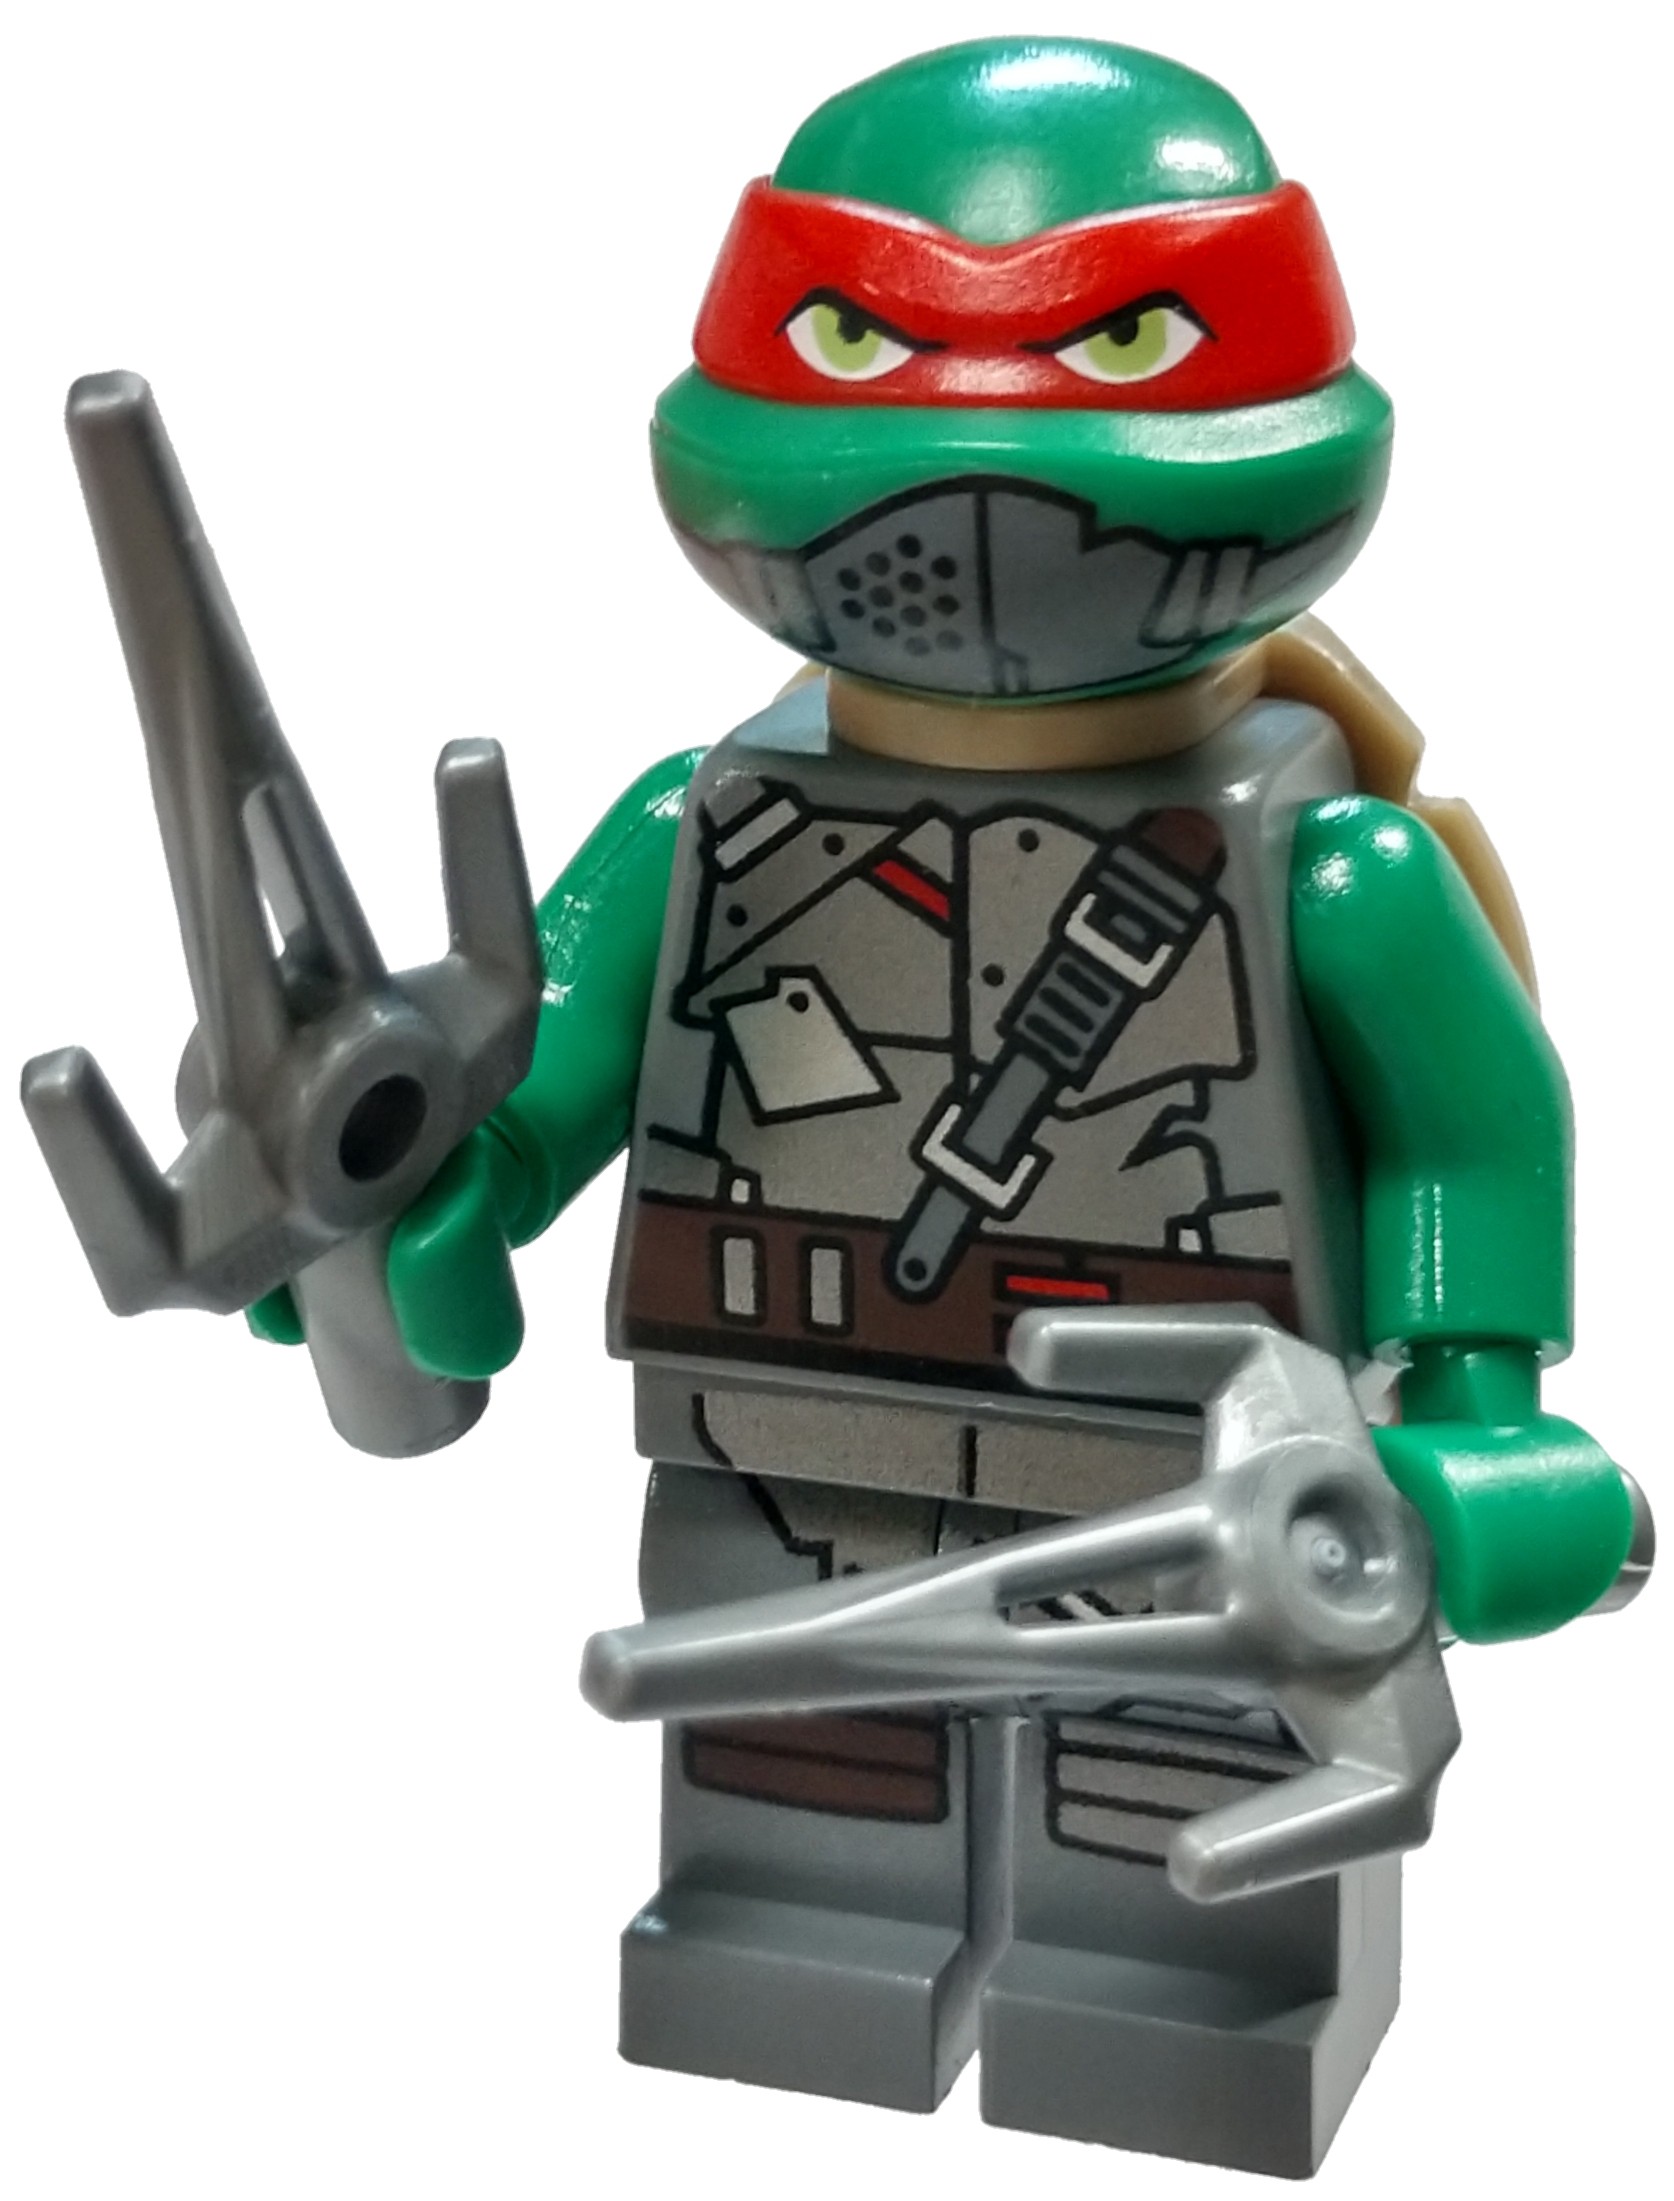 Lego Teenage Mutant Ninja Turtles Minifigure Raphael Gritted Teeth 79103!